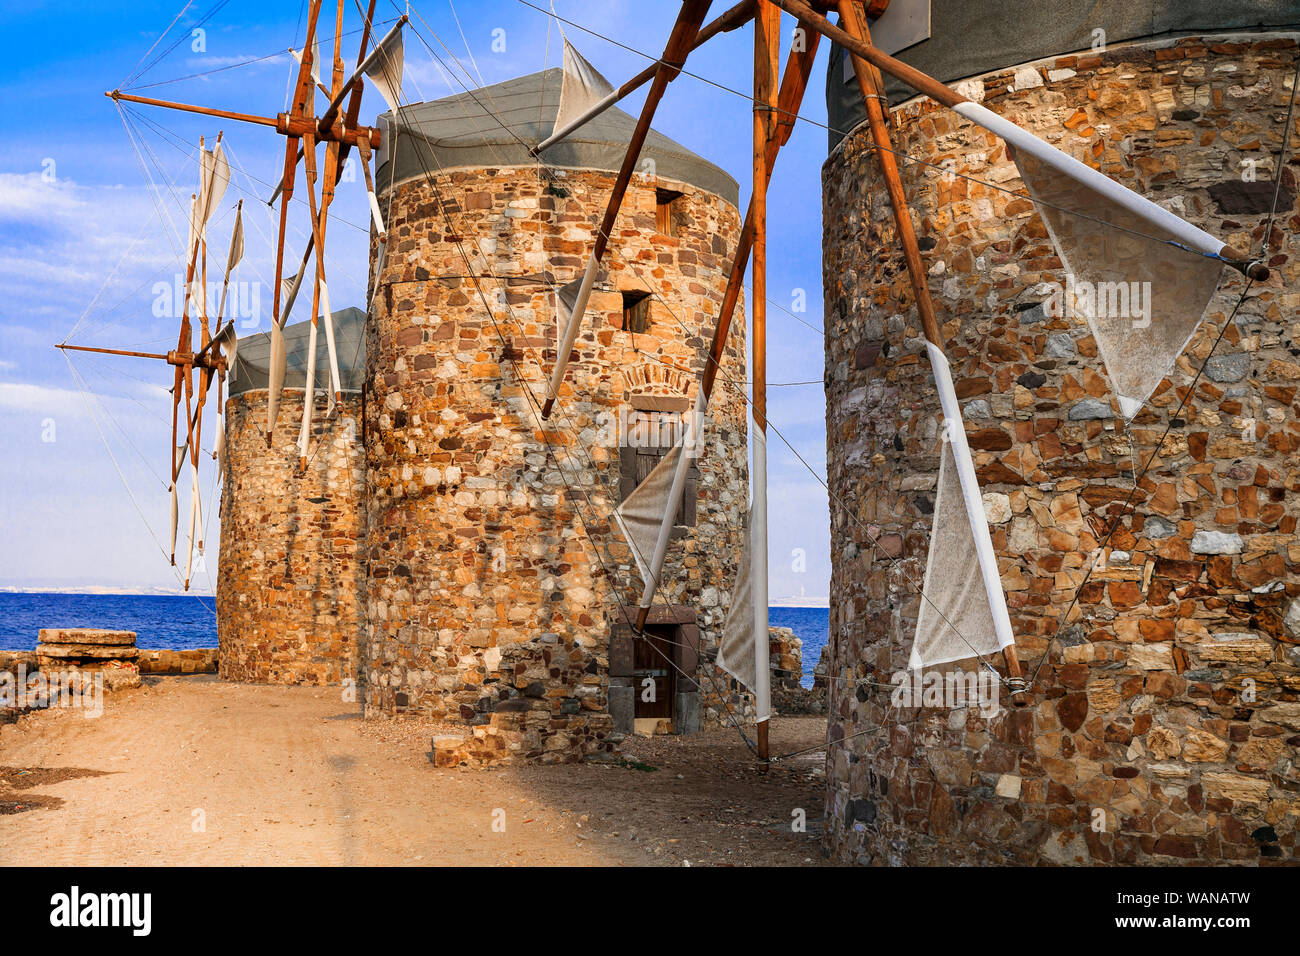 Moulins à vent traditionnels sur l'île de Chios, Grèce. Banque D'Images